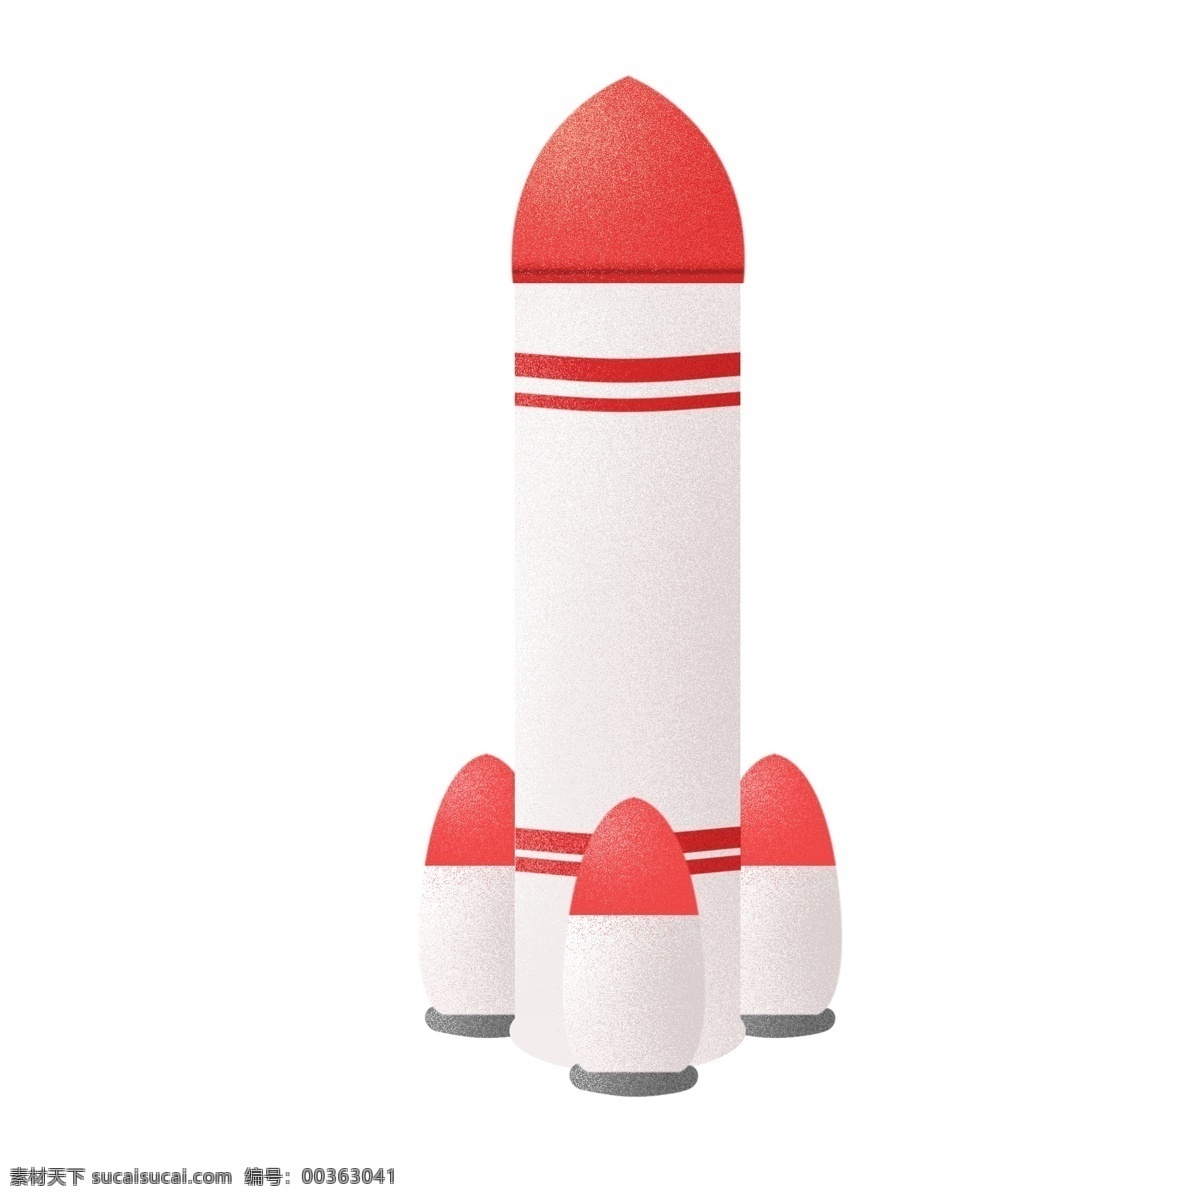 白色 火箭 图标 免 抠 太空 宇宙 卡通火箭 火苗 火箭舱 原创手绘 卡通 可爱 简单 简洁 简约 飞天 航天科技 现代化